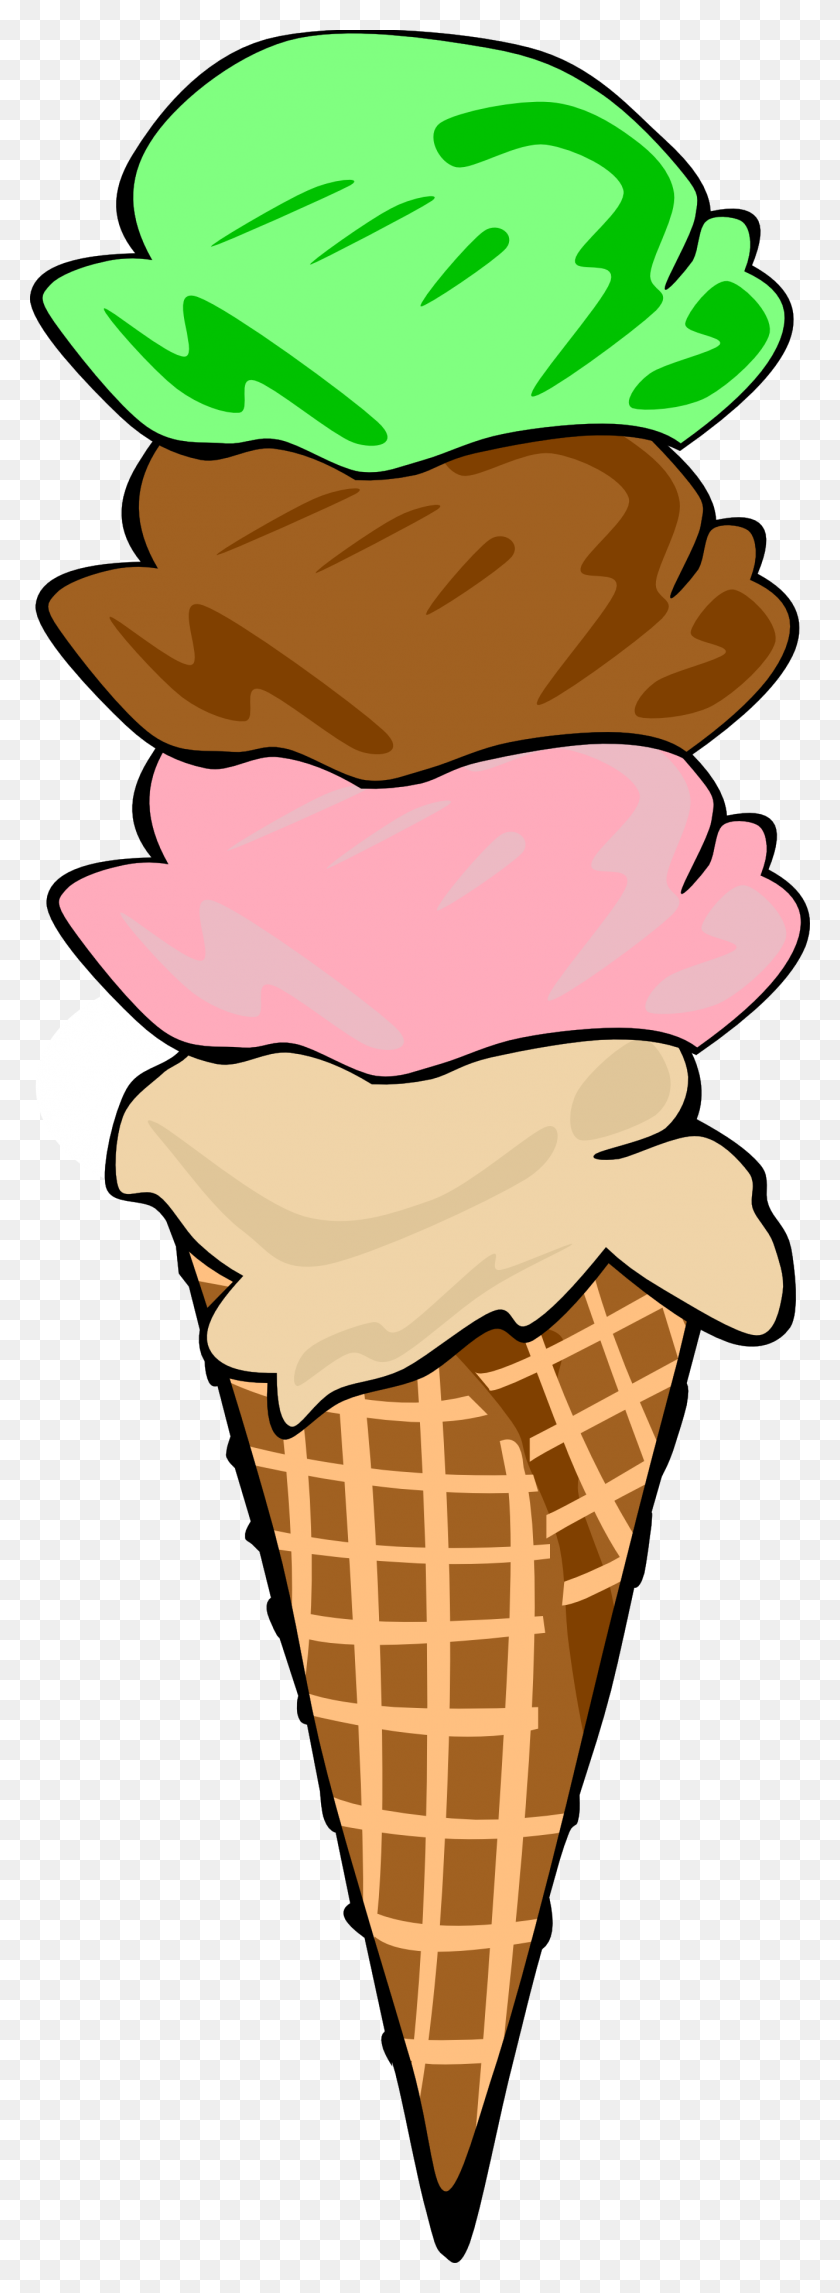 1332x3814 Ice Cream Cone Clip Art - Ice Cream Cone Clipart Black And White